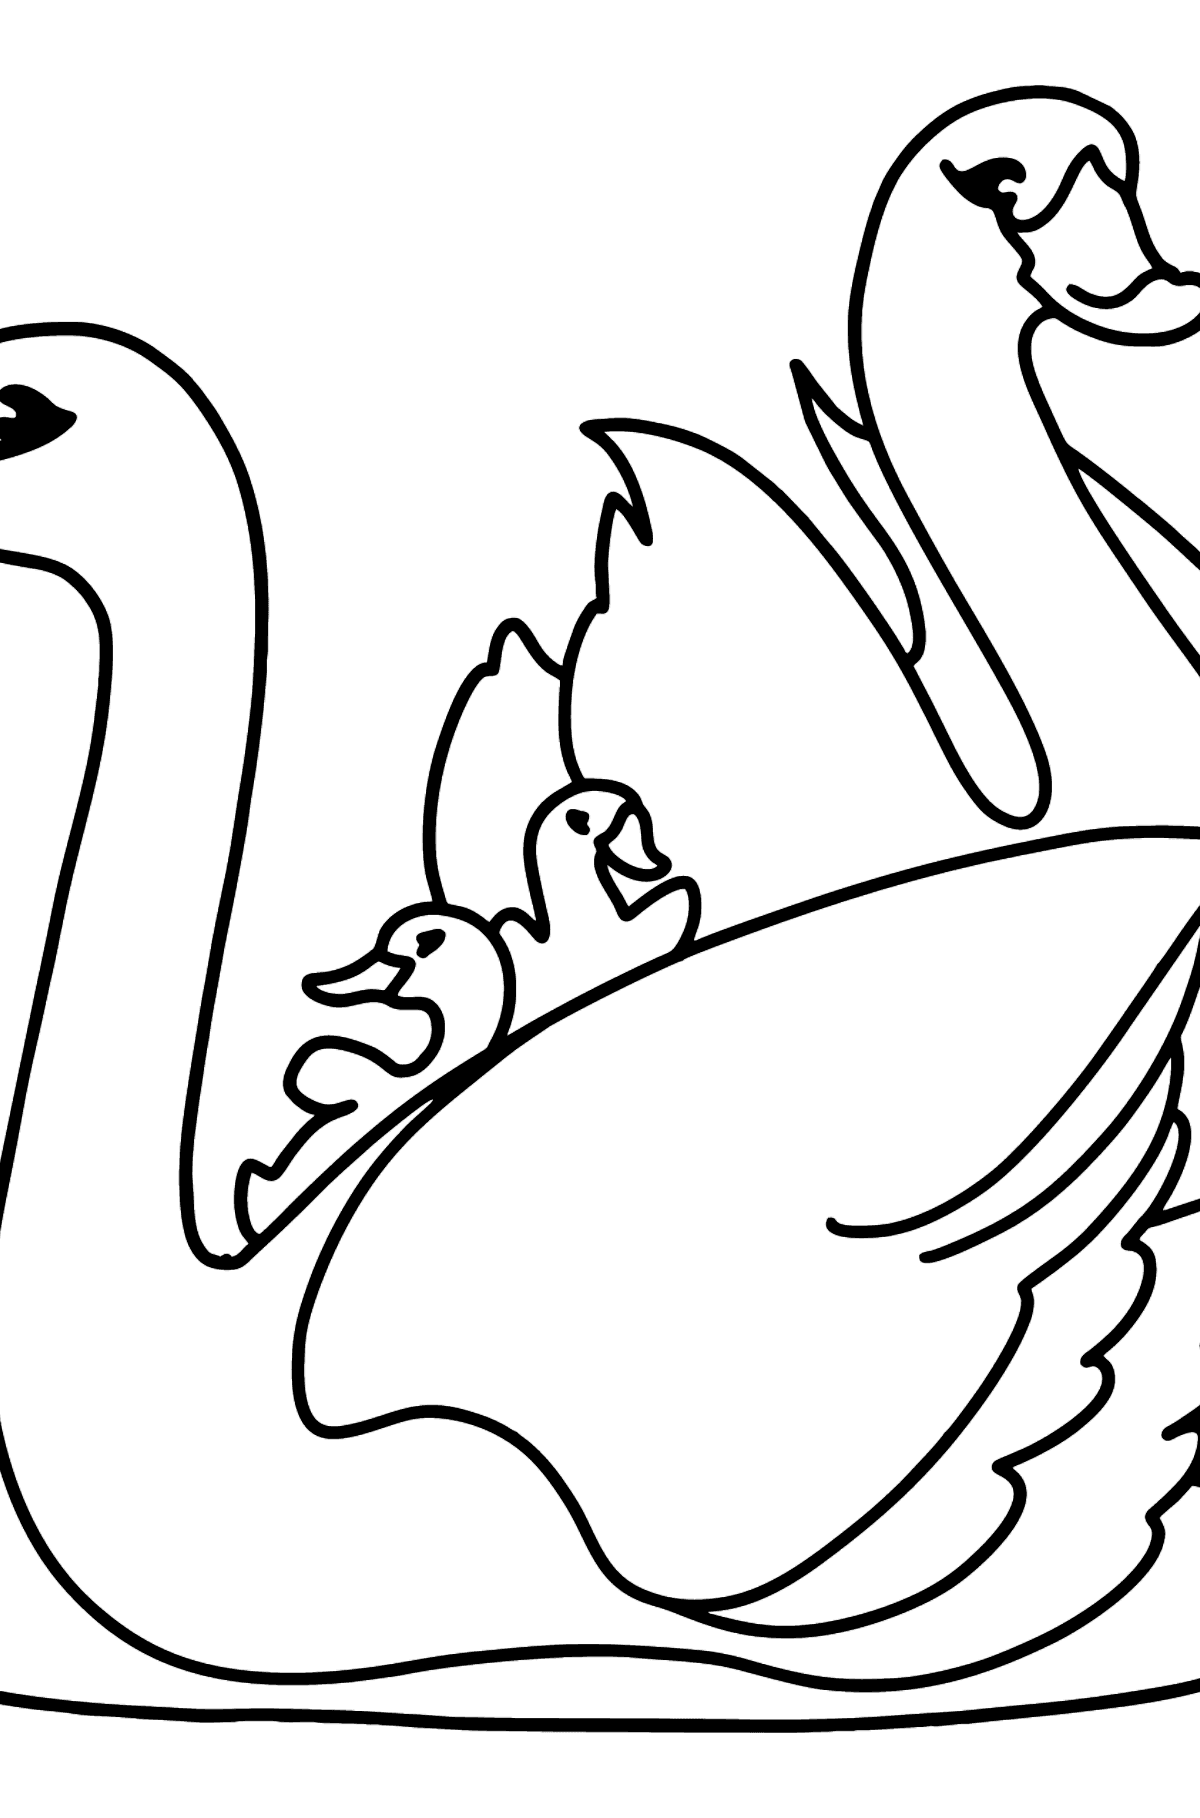 Desenho para colorir de White Swans - Imagens para Colorir para Crianças